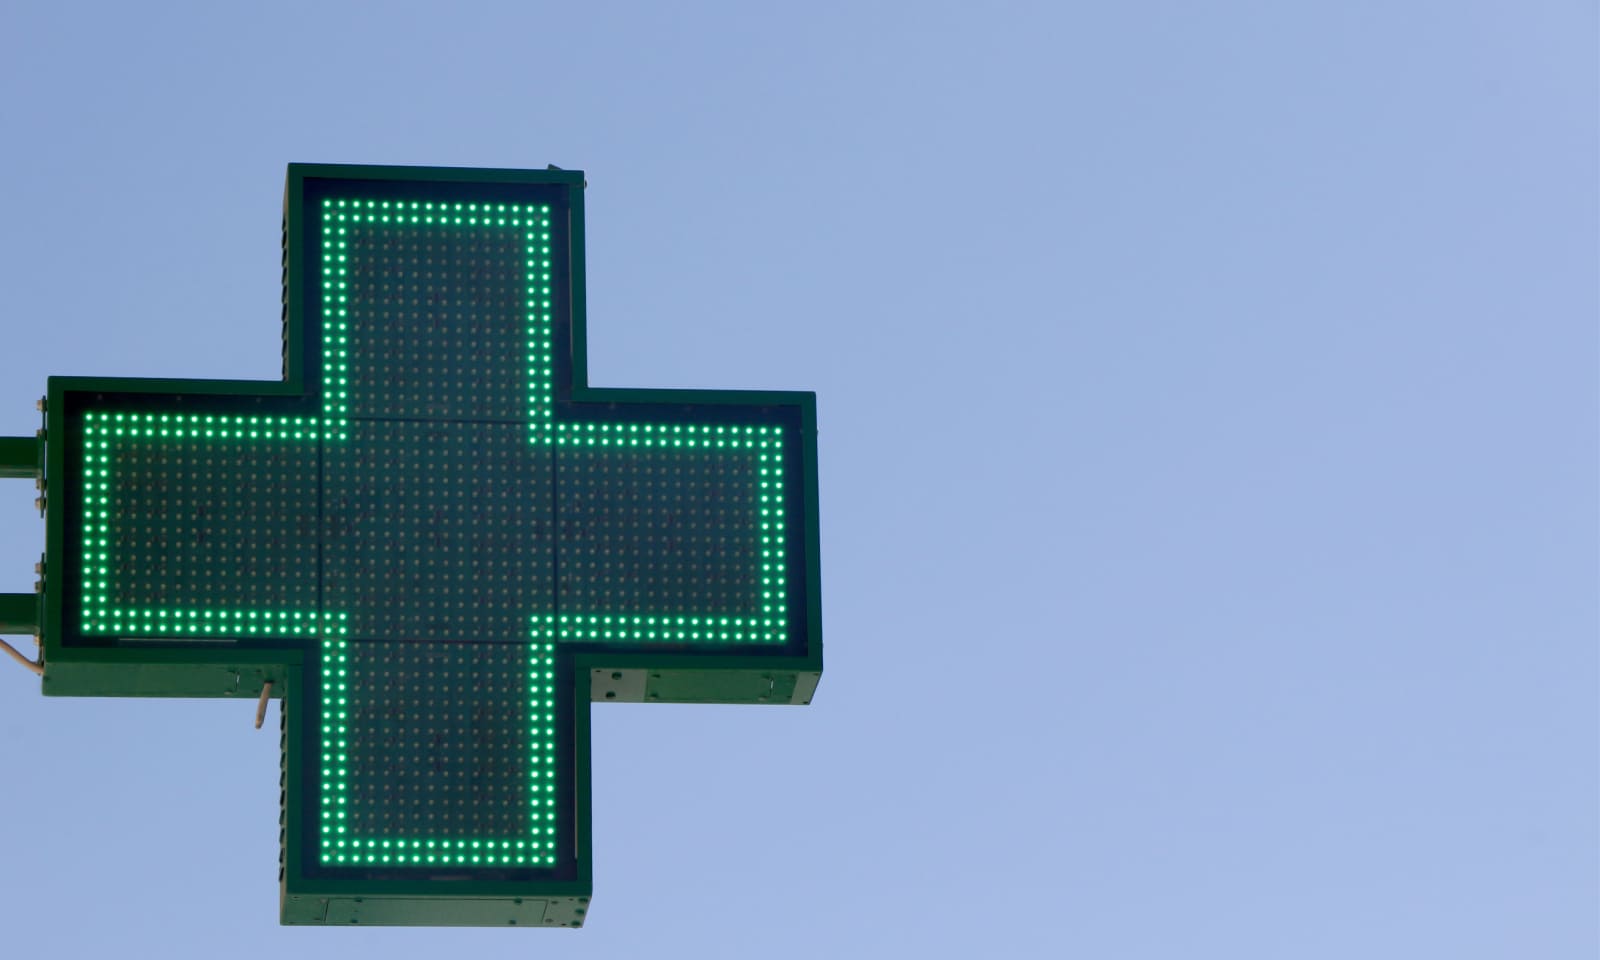 LED Pharmacy Cross